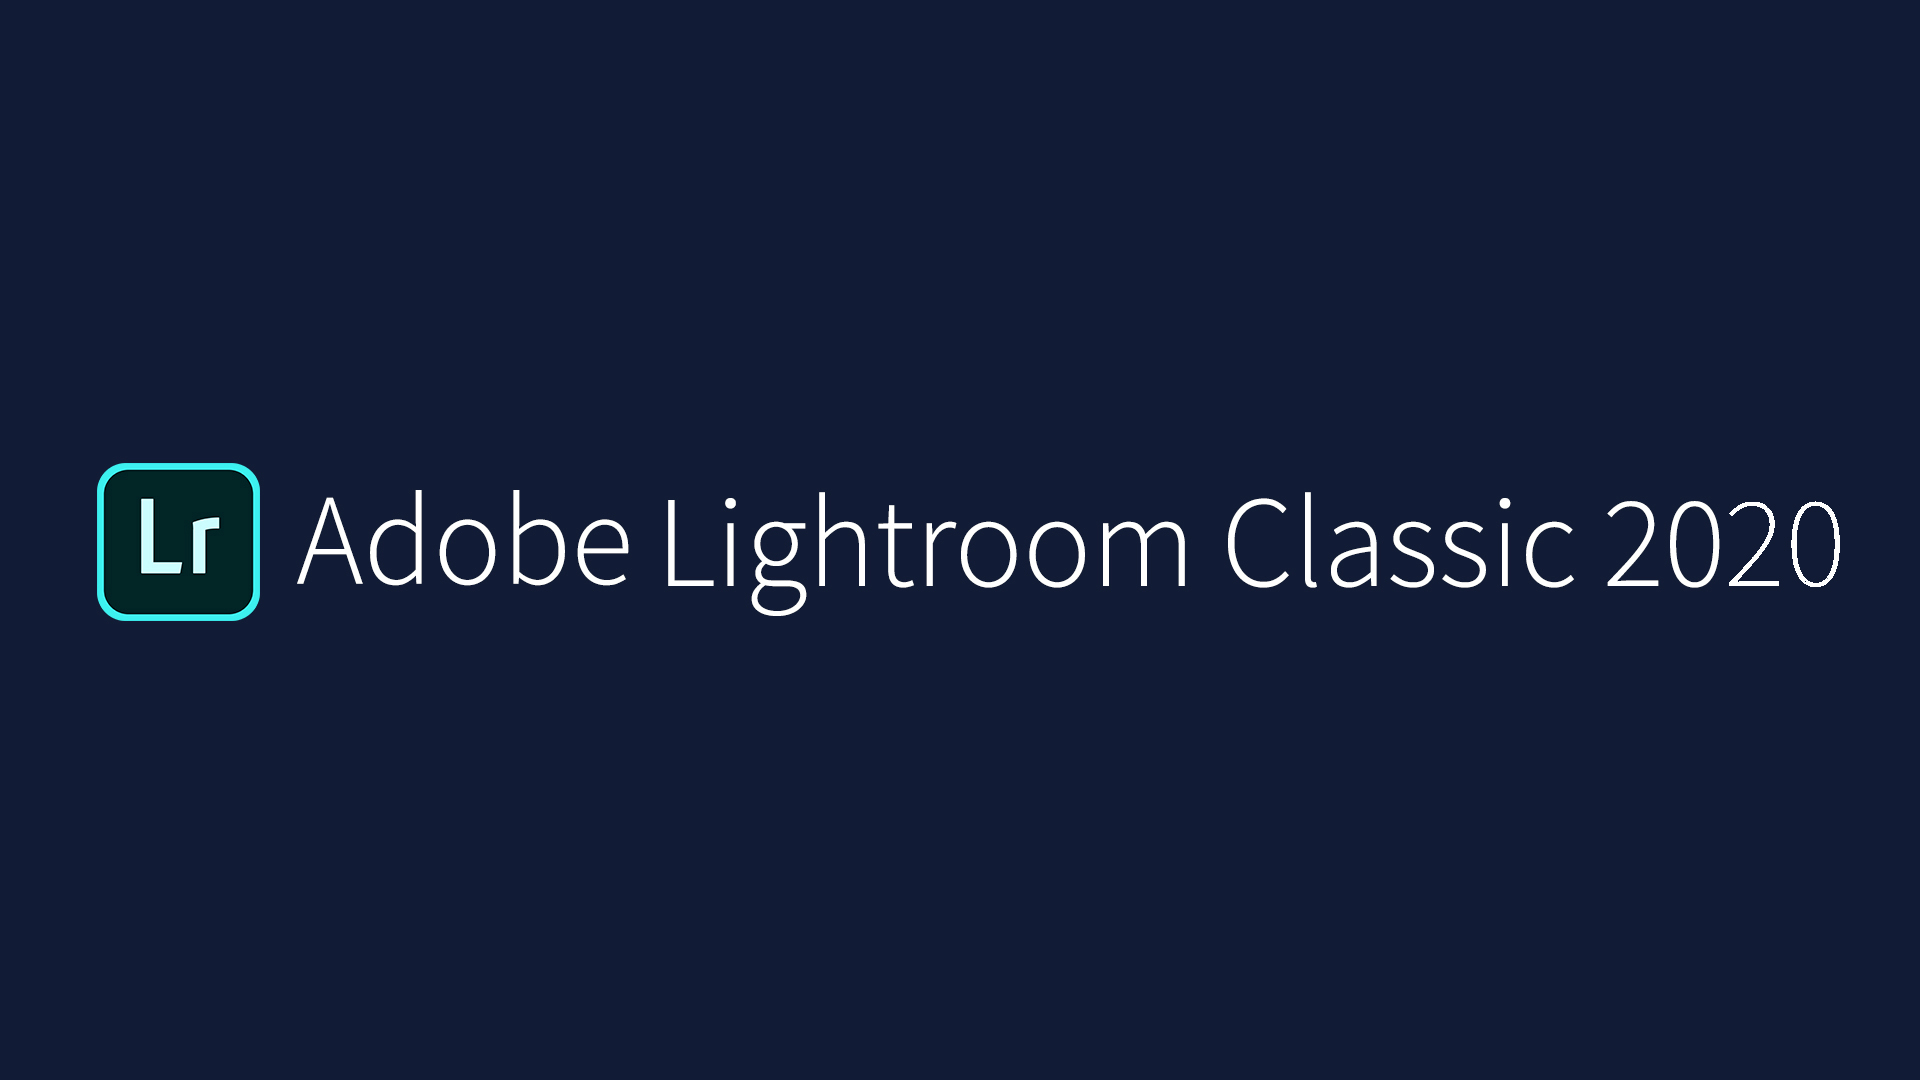 Adobe Lightroom Classic CC 2020 - Download - Hướng dẫn cài đặt nhanh nhất